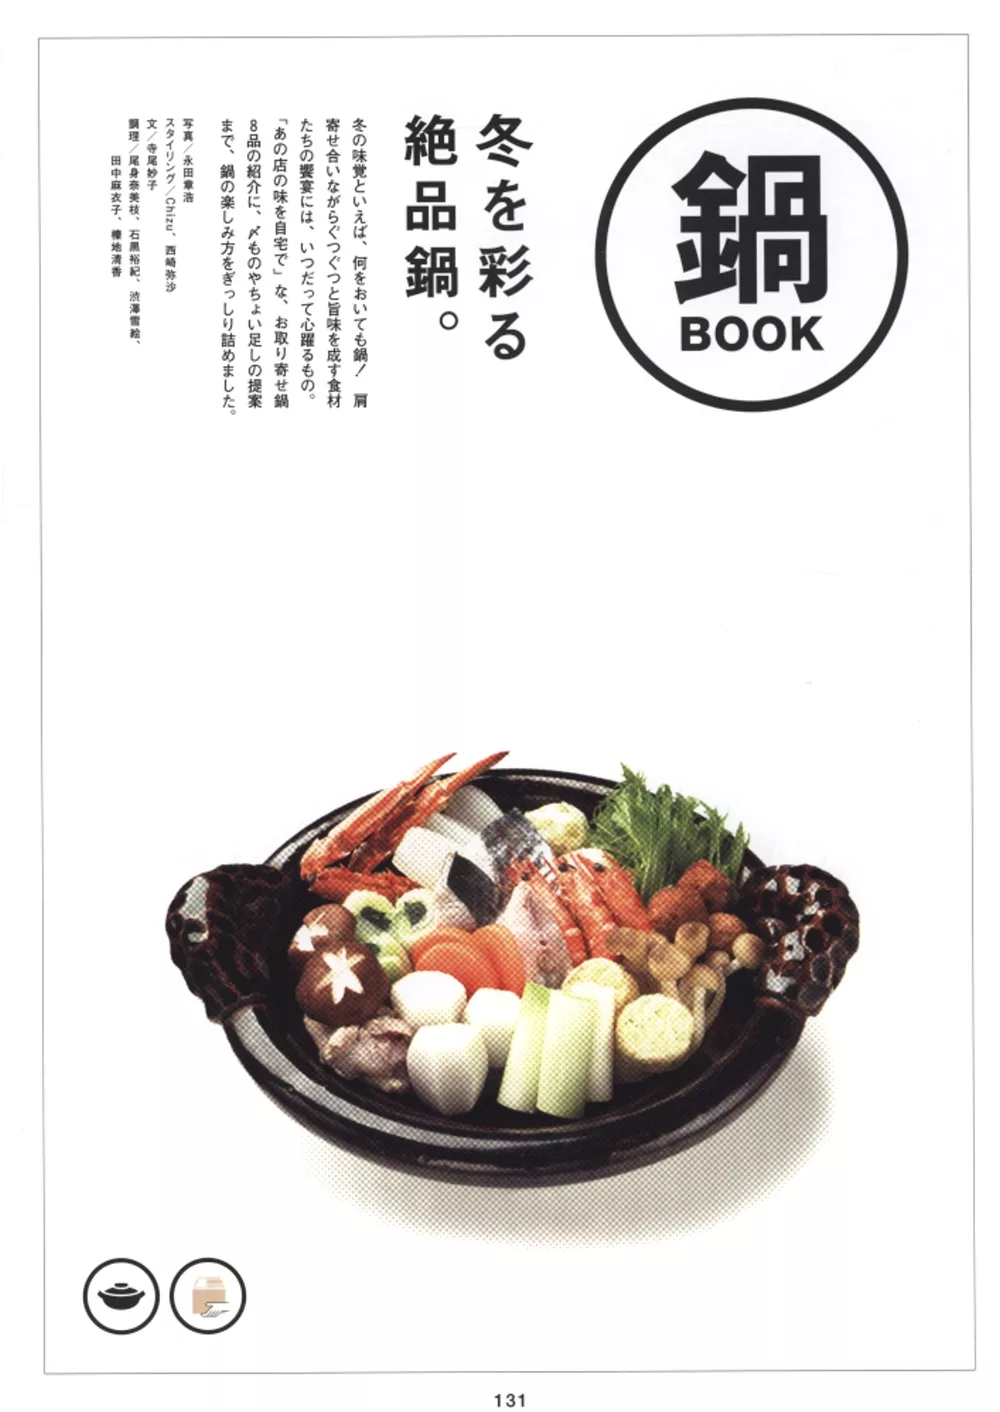 ＊	【特別附錄】替冬季增色的絕品鍋食譜BOOK